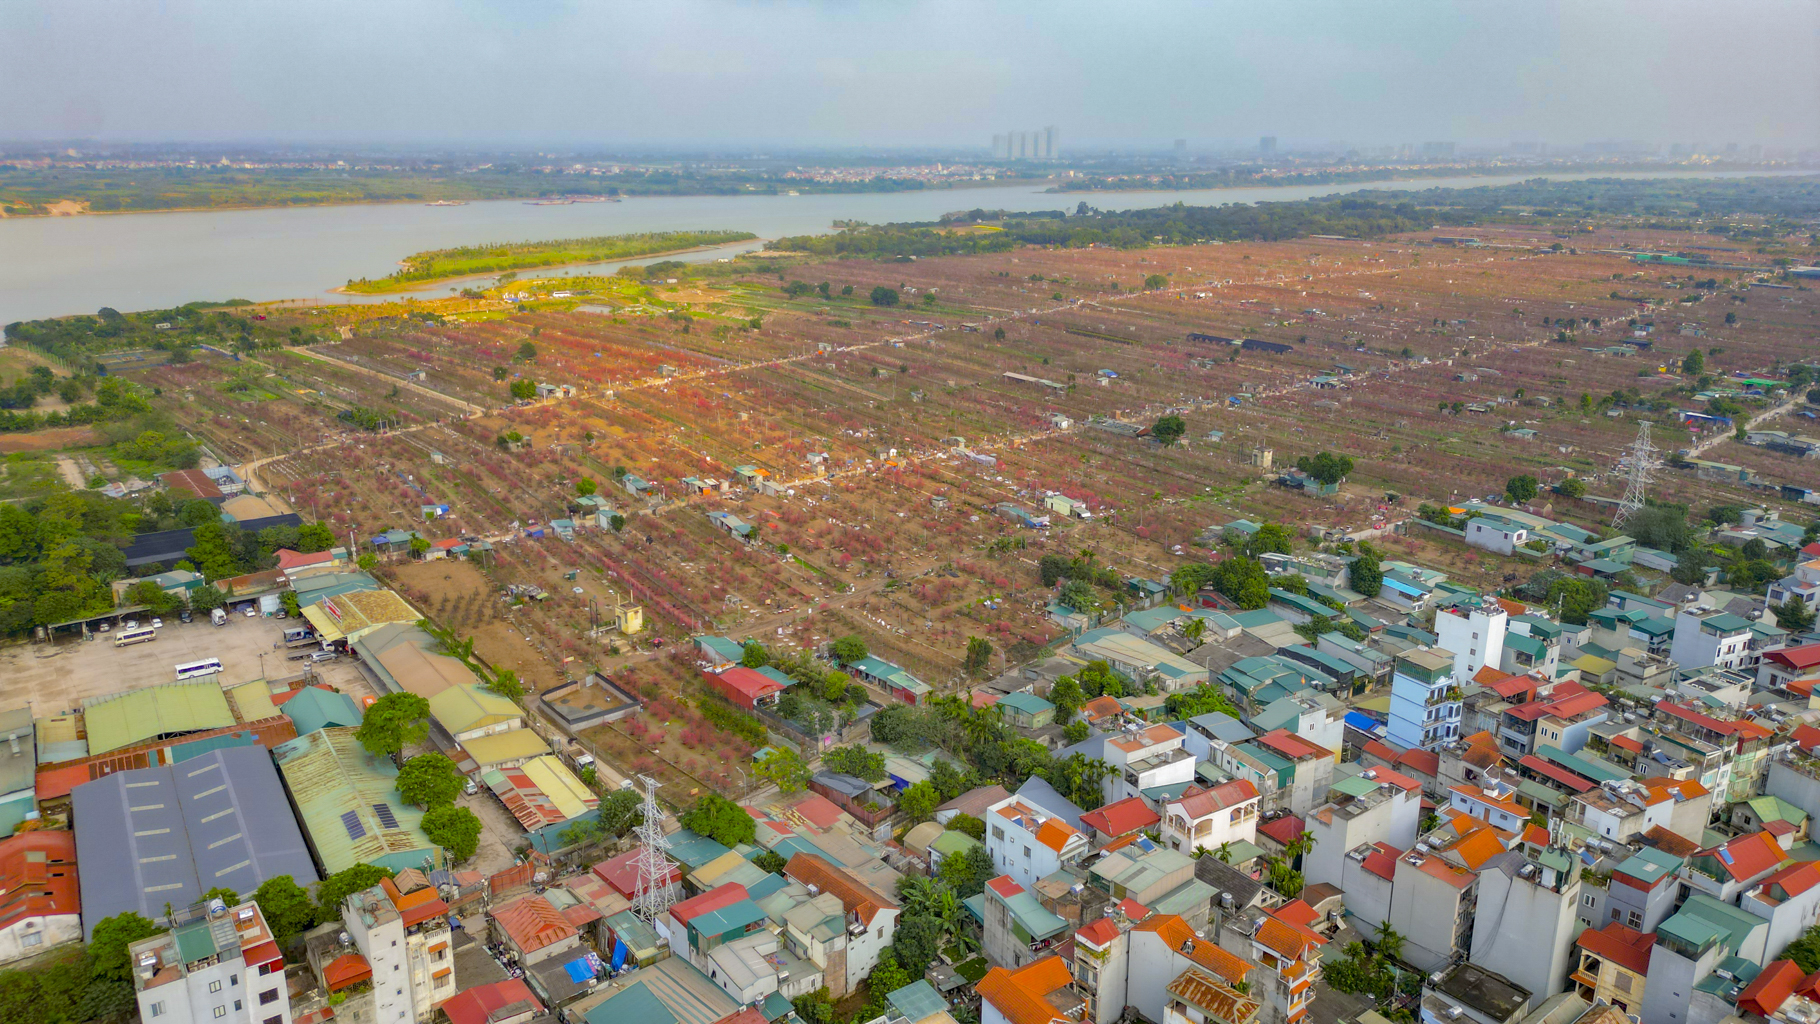 Quỹ đất lớn duy nhất còn sót lại ở Hà Nội, rộng bằng 8 quận nội thành, có nơi cách hồ Gươm chỉ vài phút đi xe- Ảnh 3.